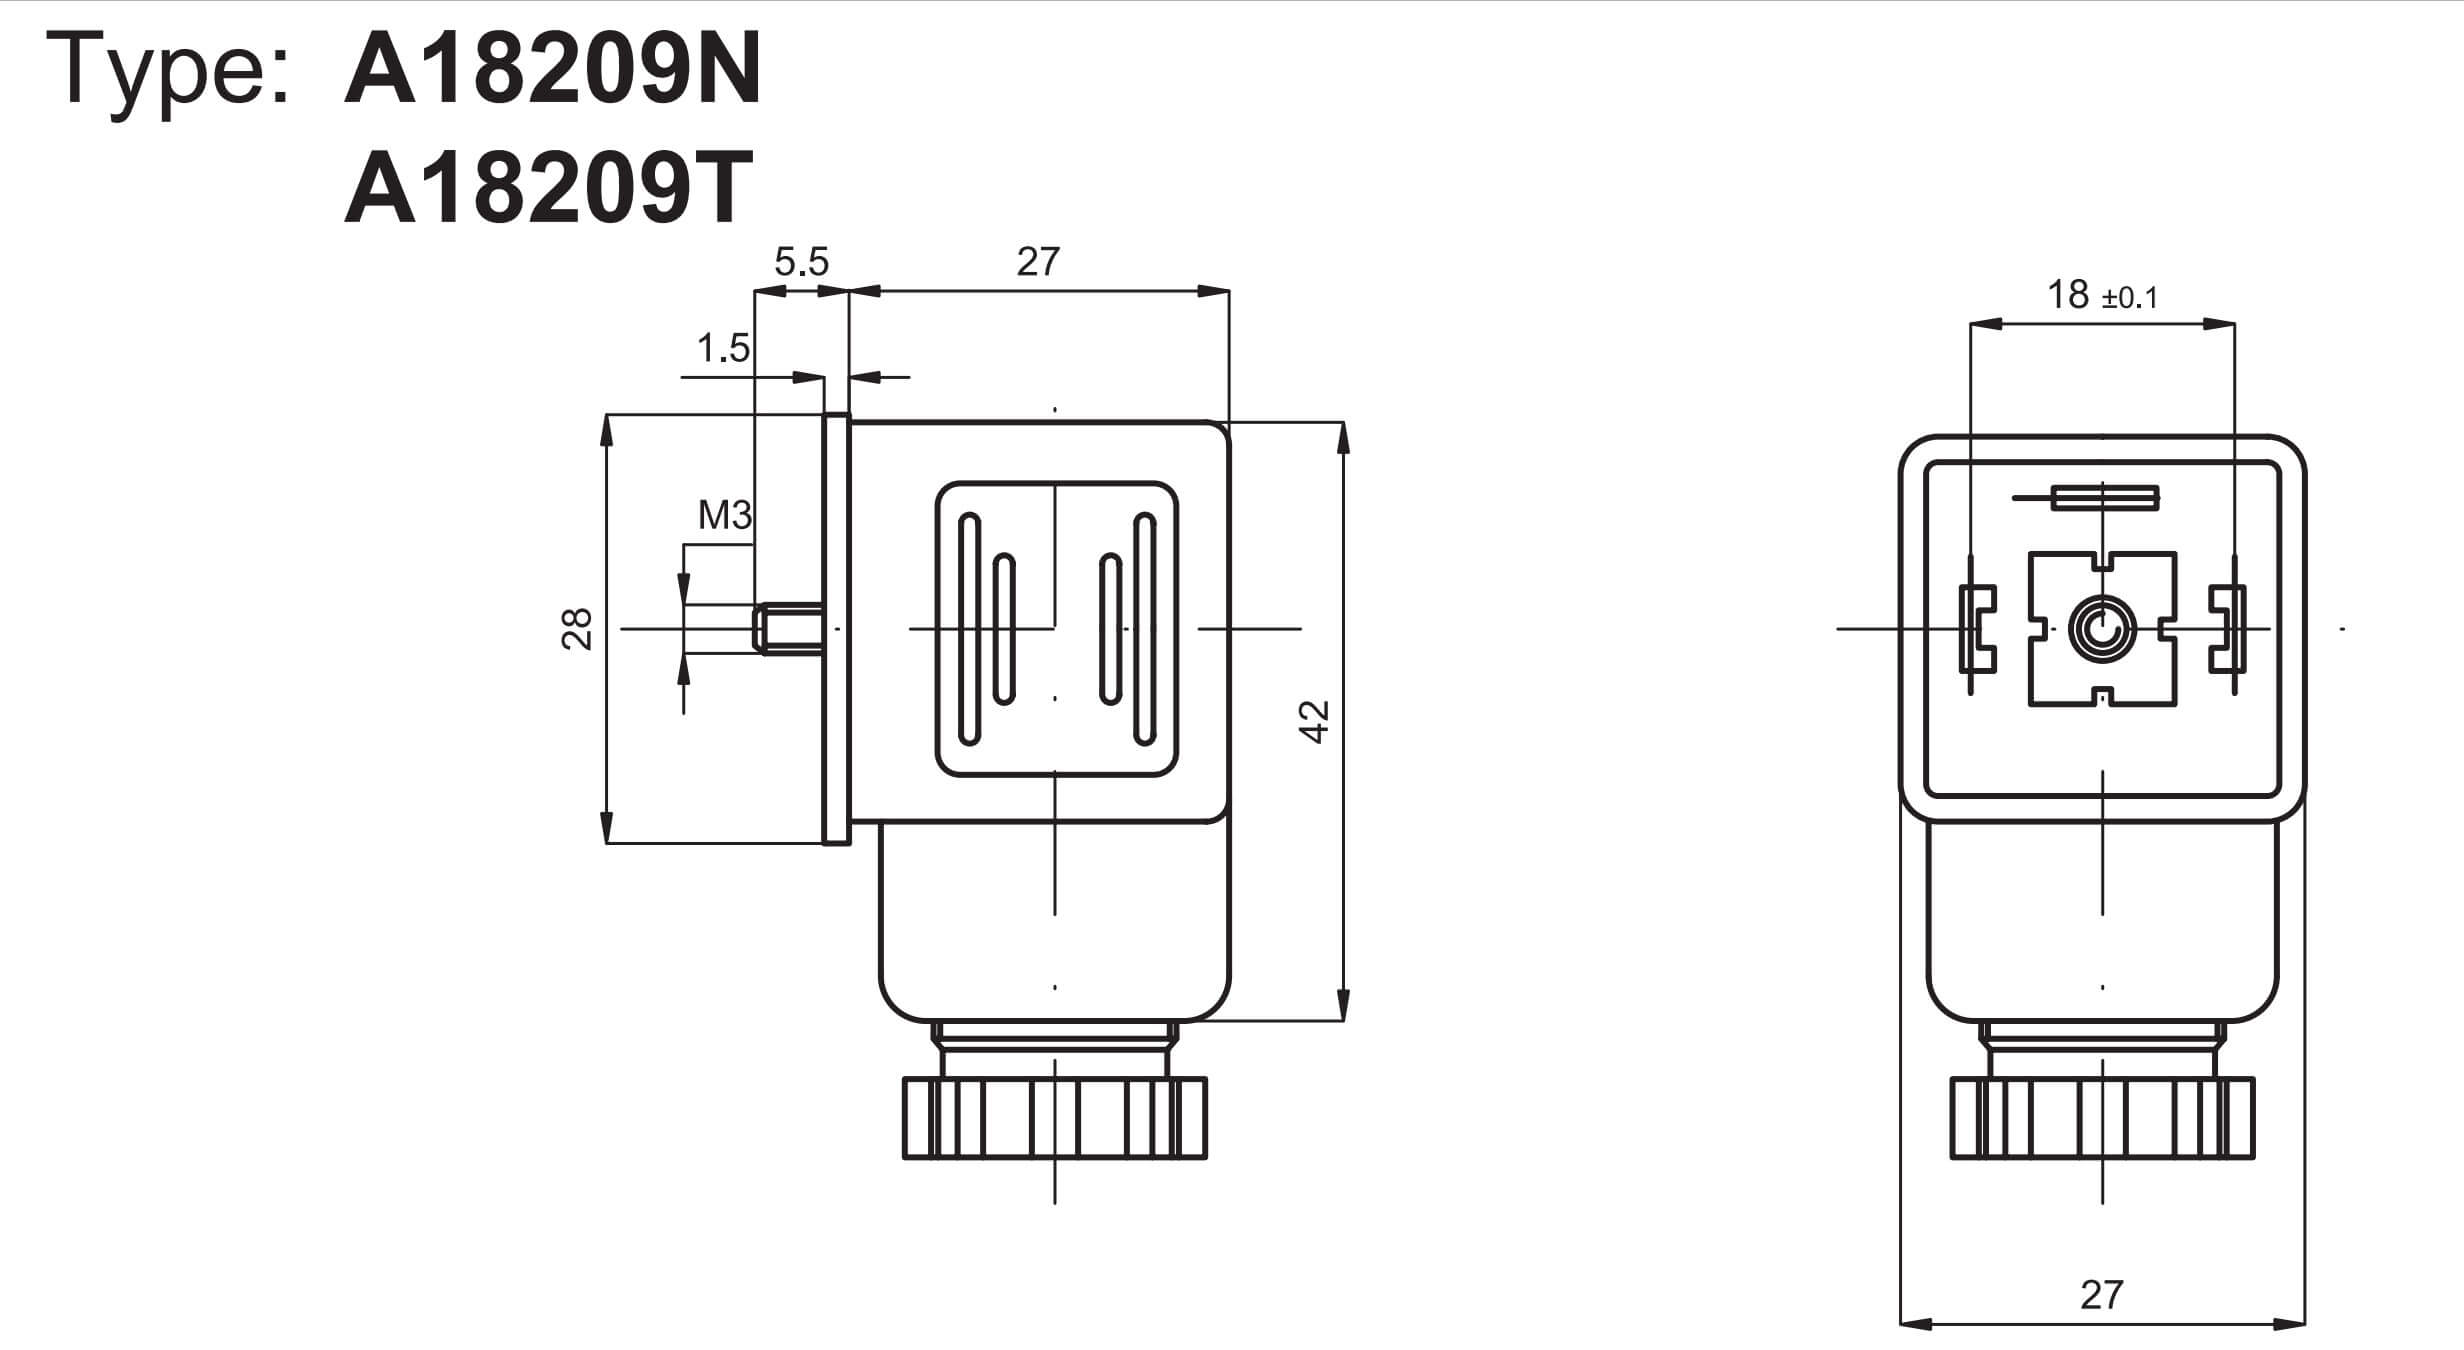 Technický výkres konektoru A18209N k cívkám ASA2 pro velikosti ISO1 a ISO2